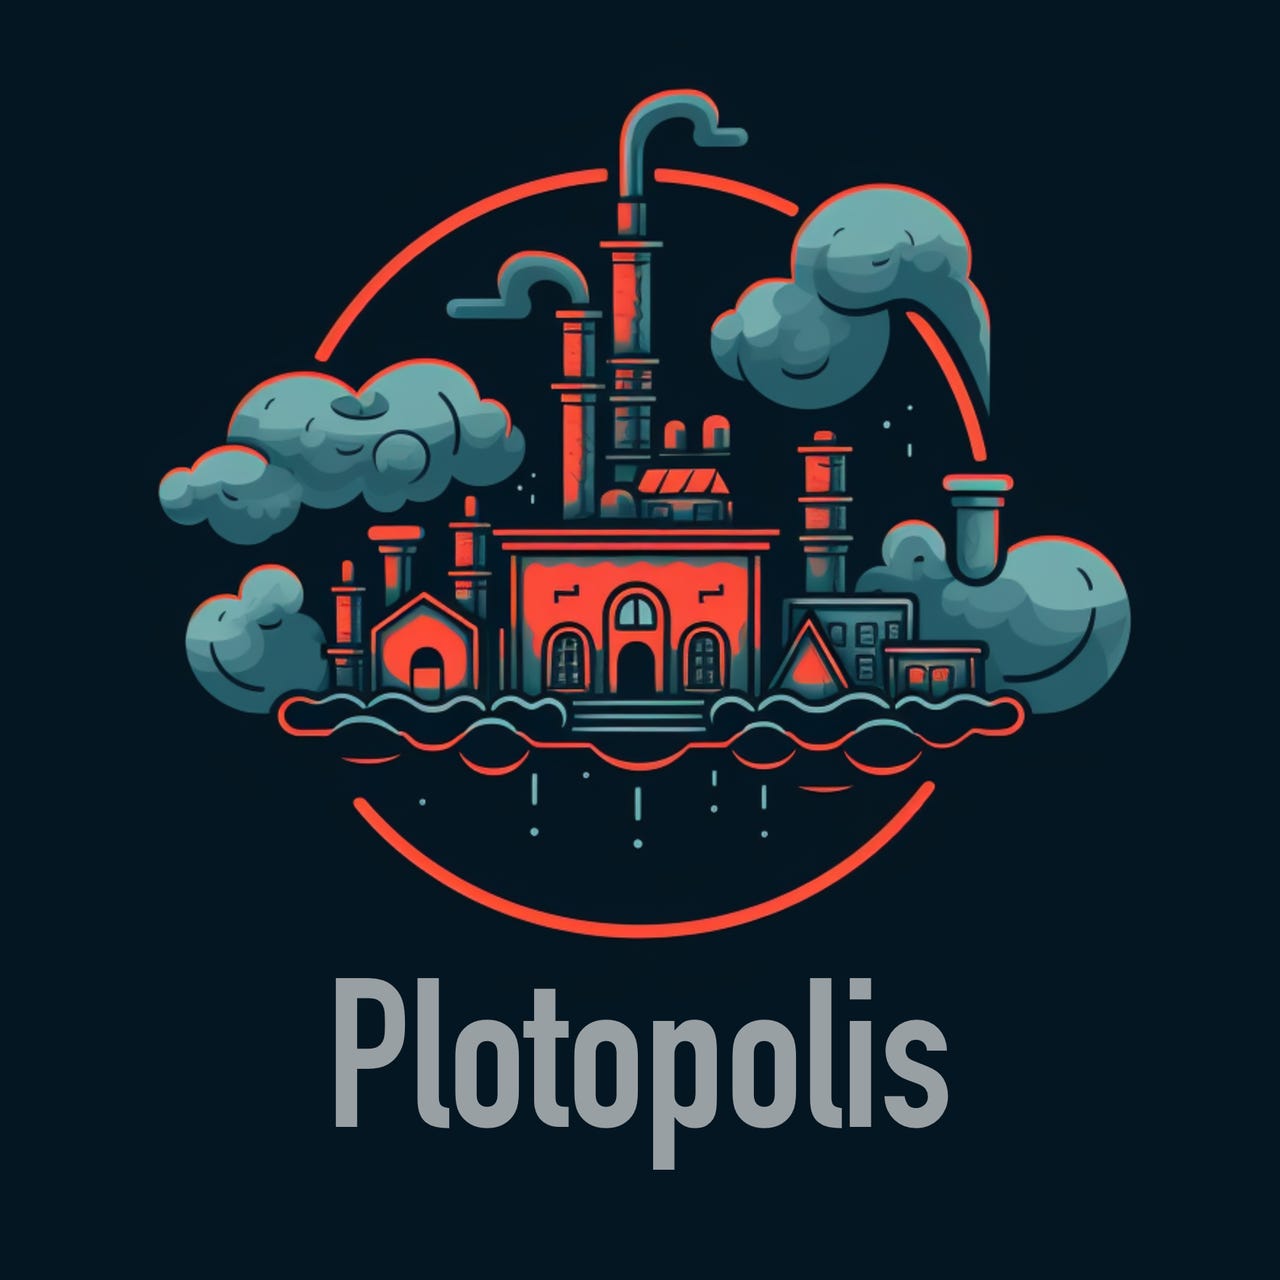 Plotopolis